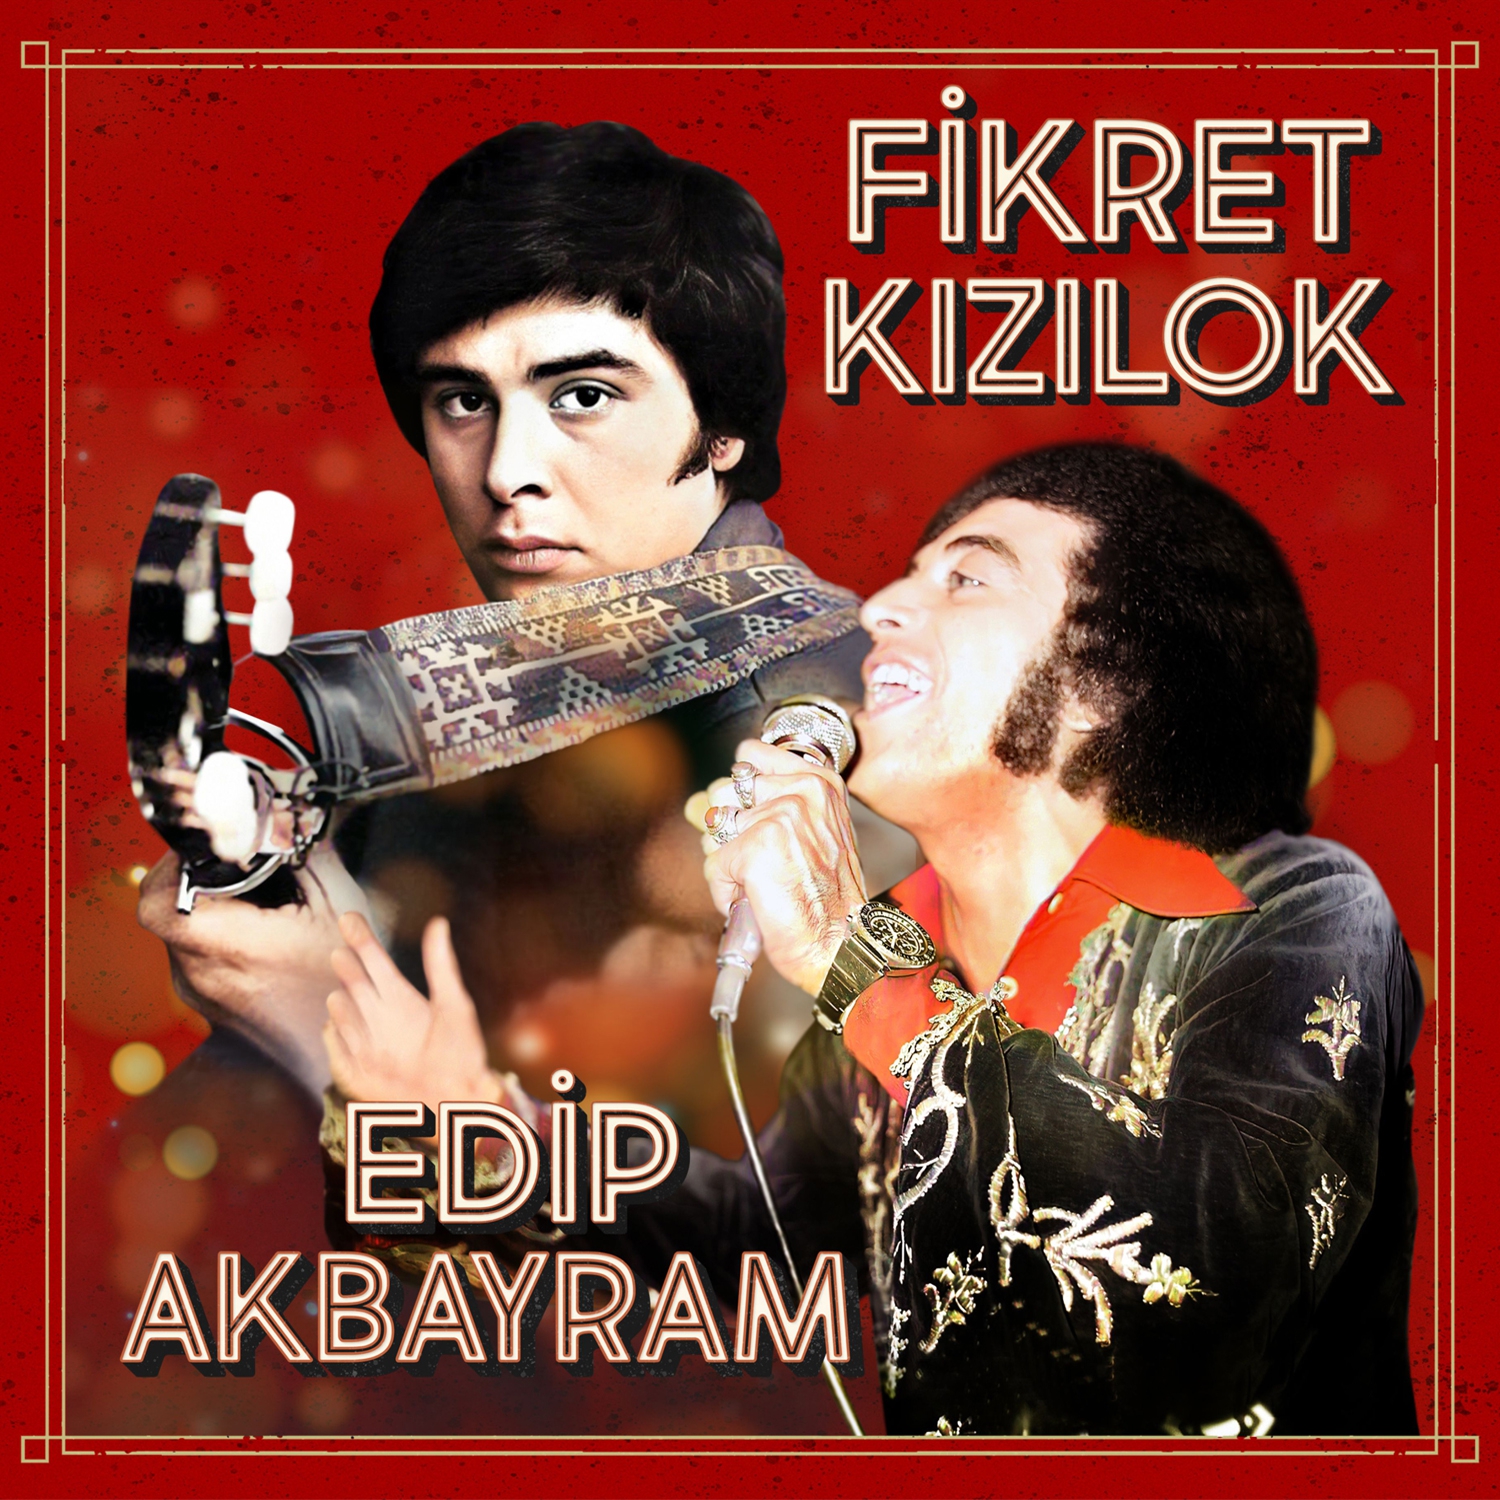 Fikret Kızılok, Edip Akbayram - Fikret Kızılok & Edip Akbayram